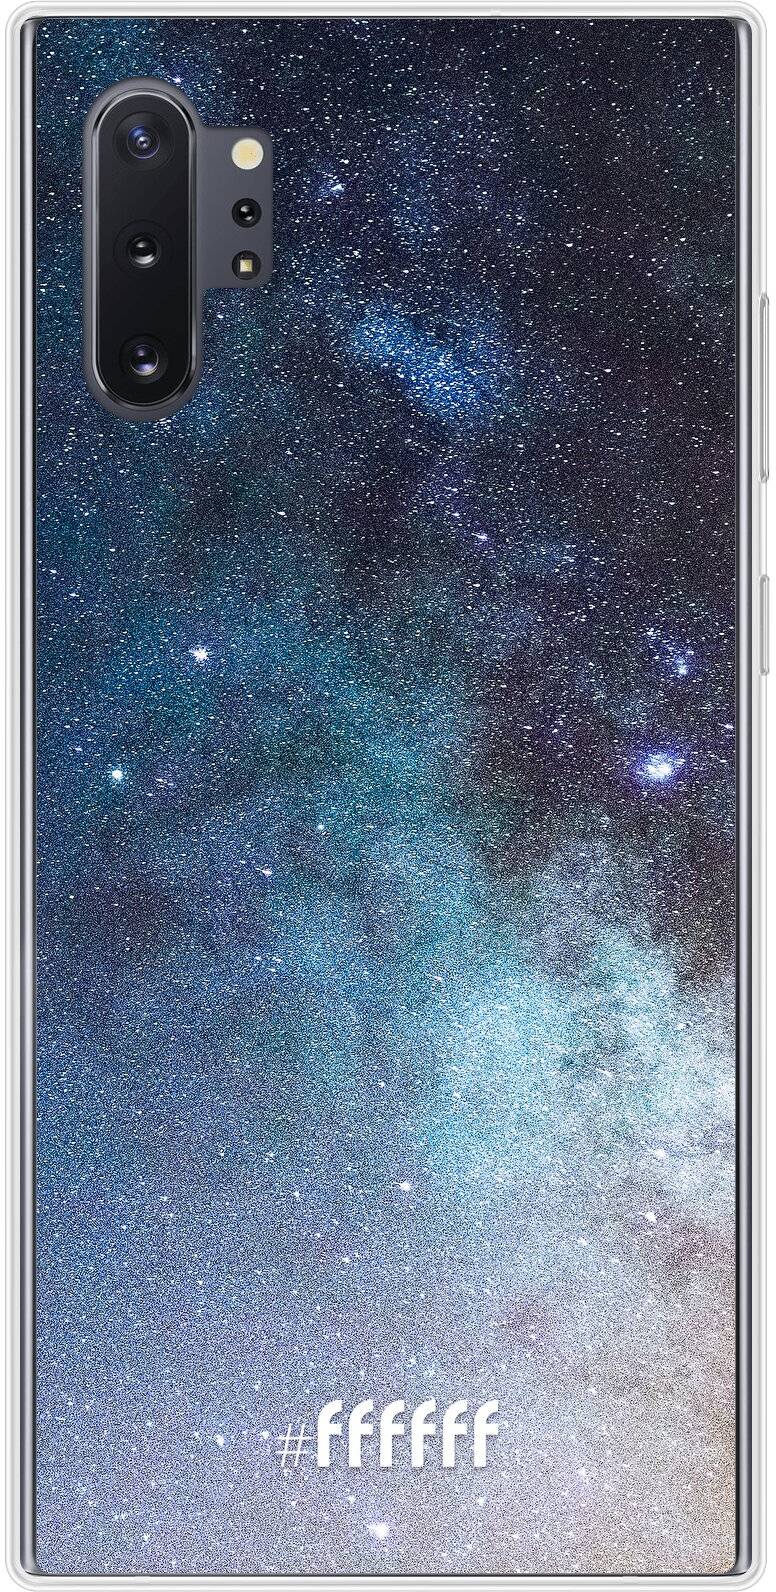 Milky Way Galaxy Note 10 Plus